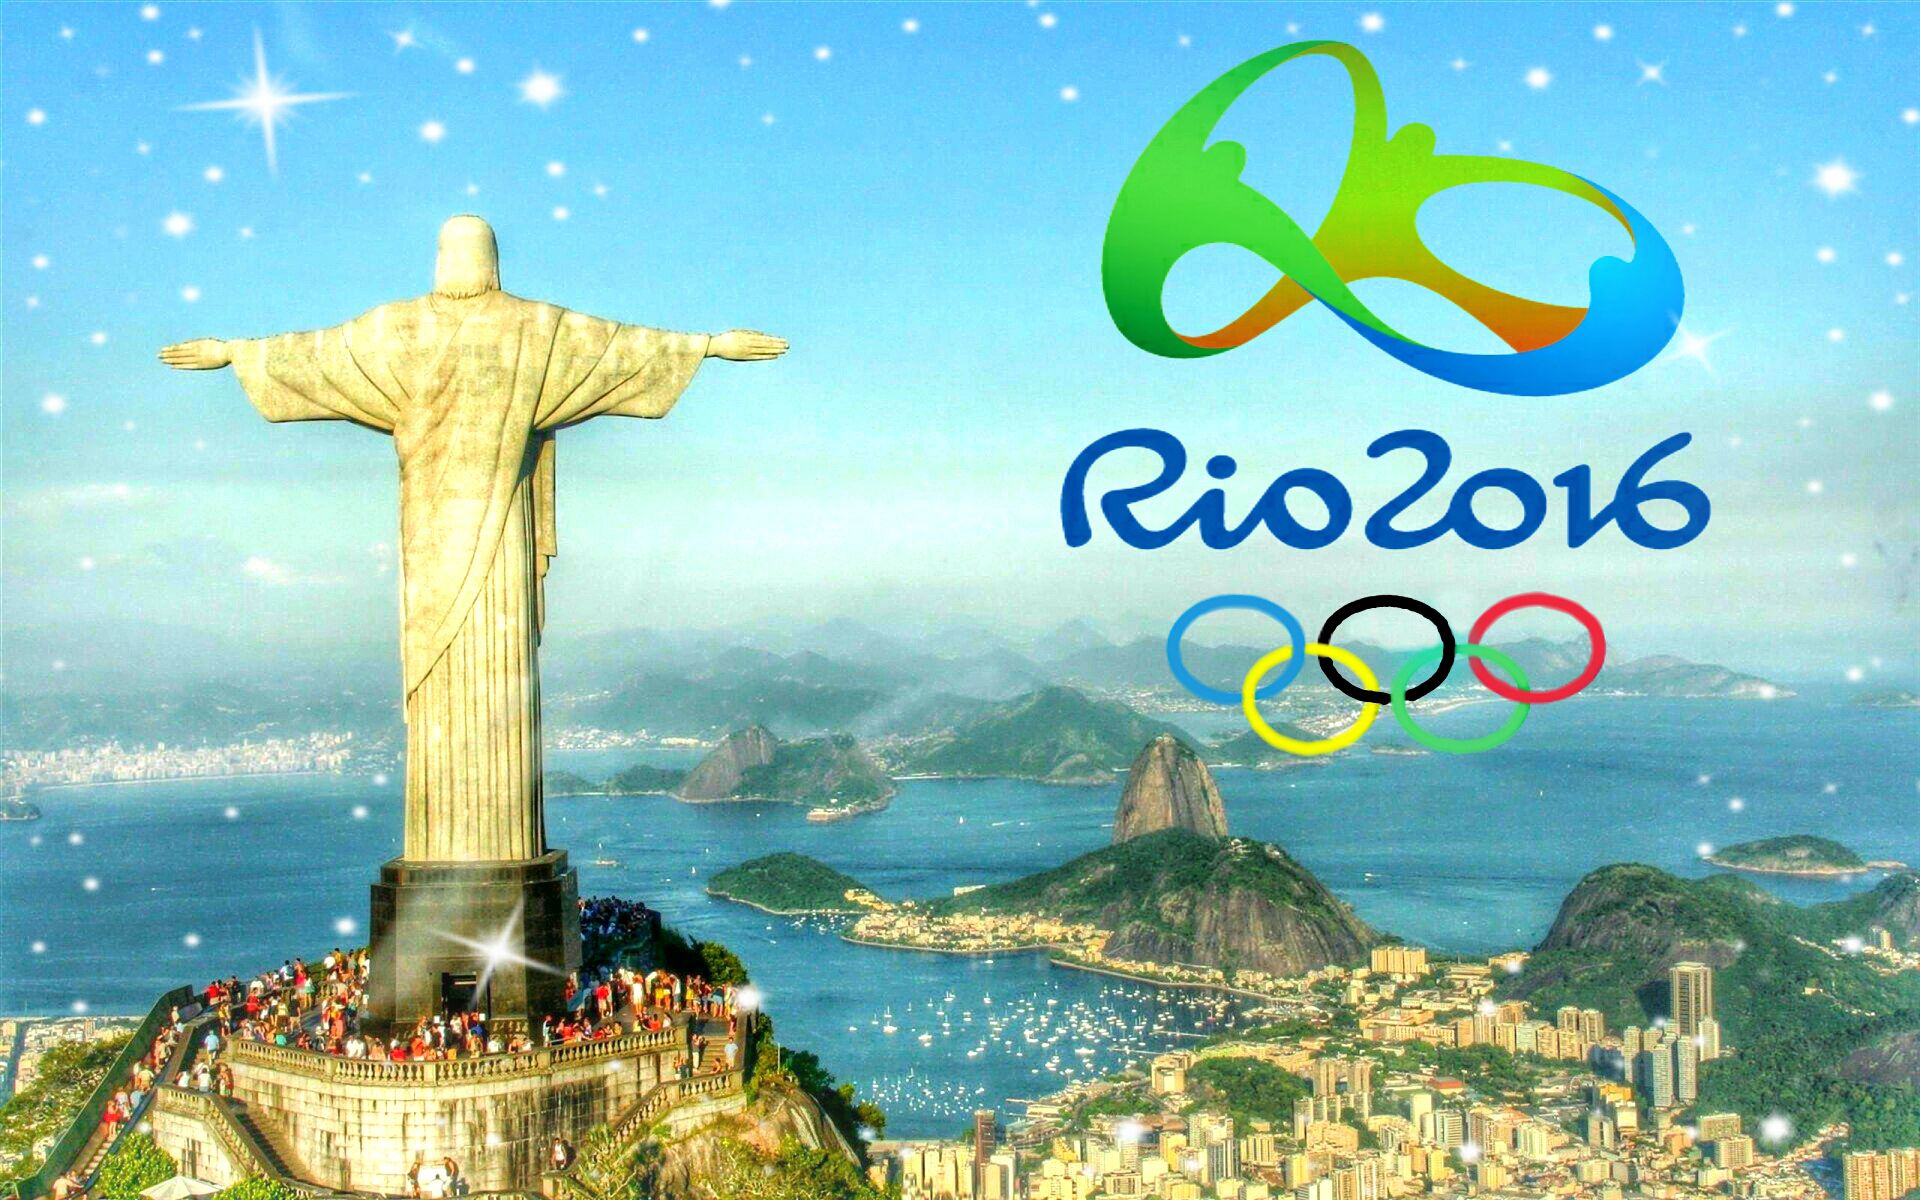 Популярные заставки и фоны Рио 2016 на компьютер